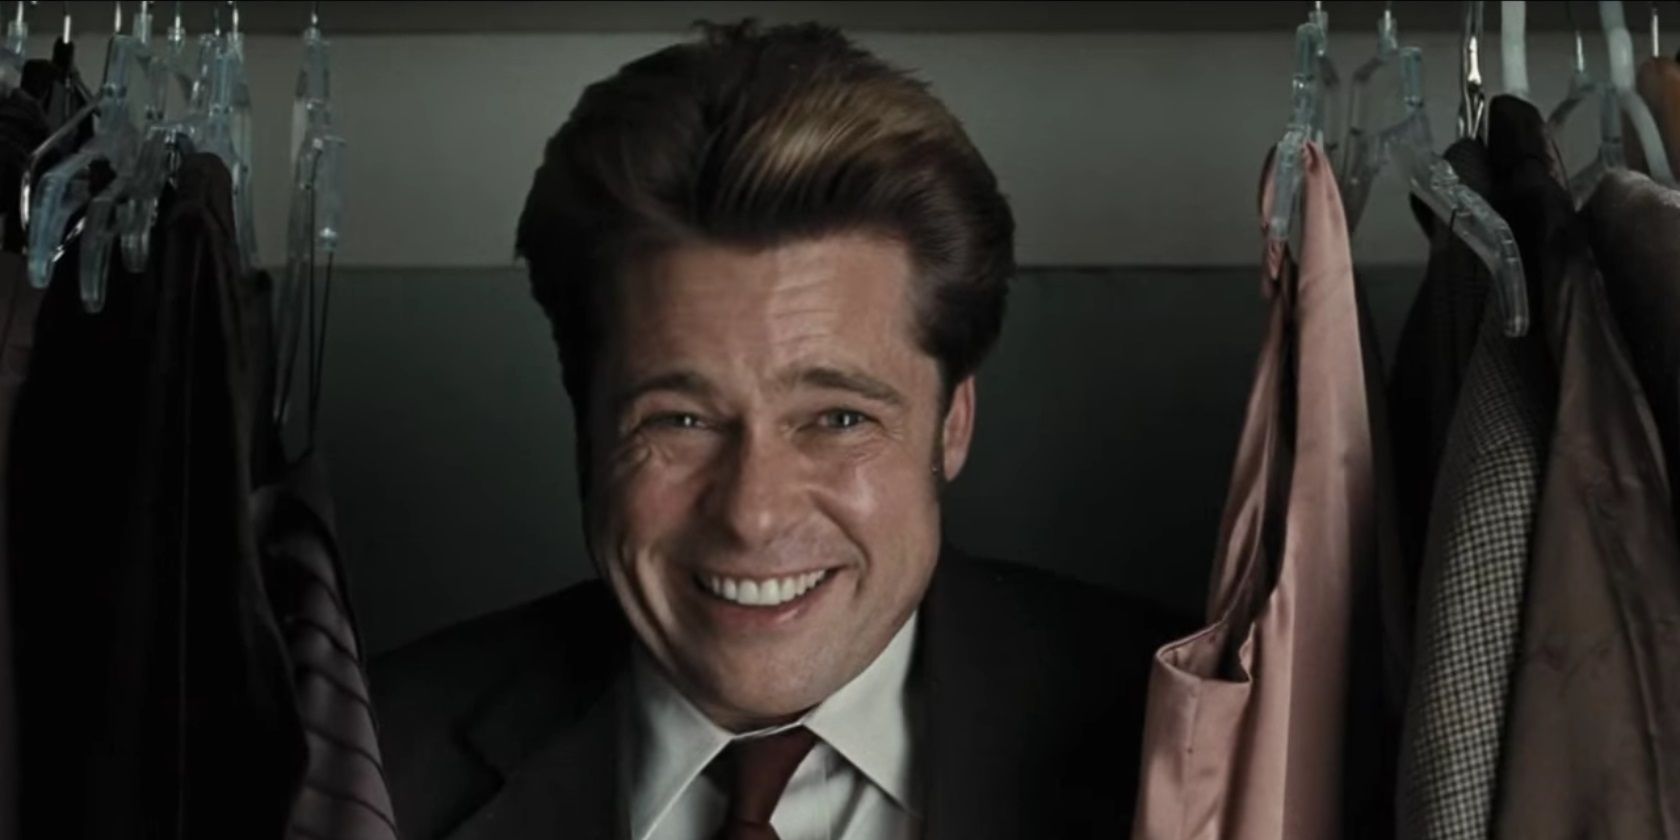  Chad Feldheimer, de Brad Pitt, sorri no armário em Burn After Reading